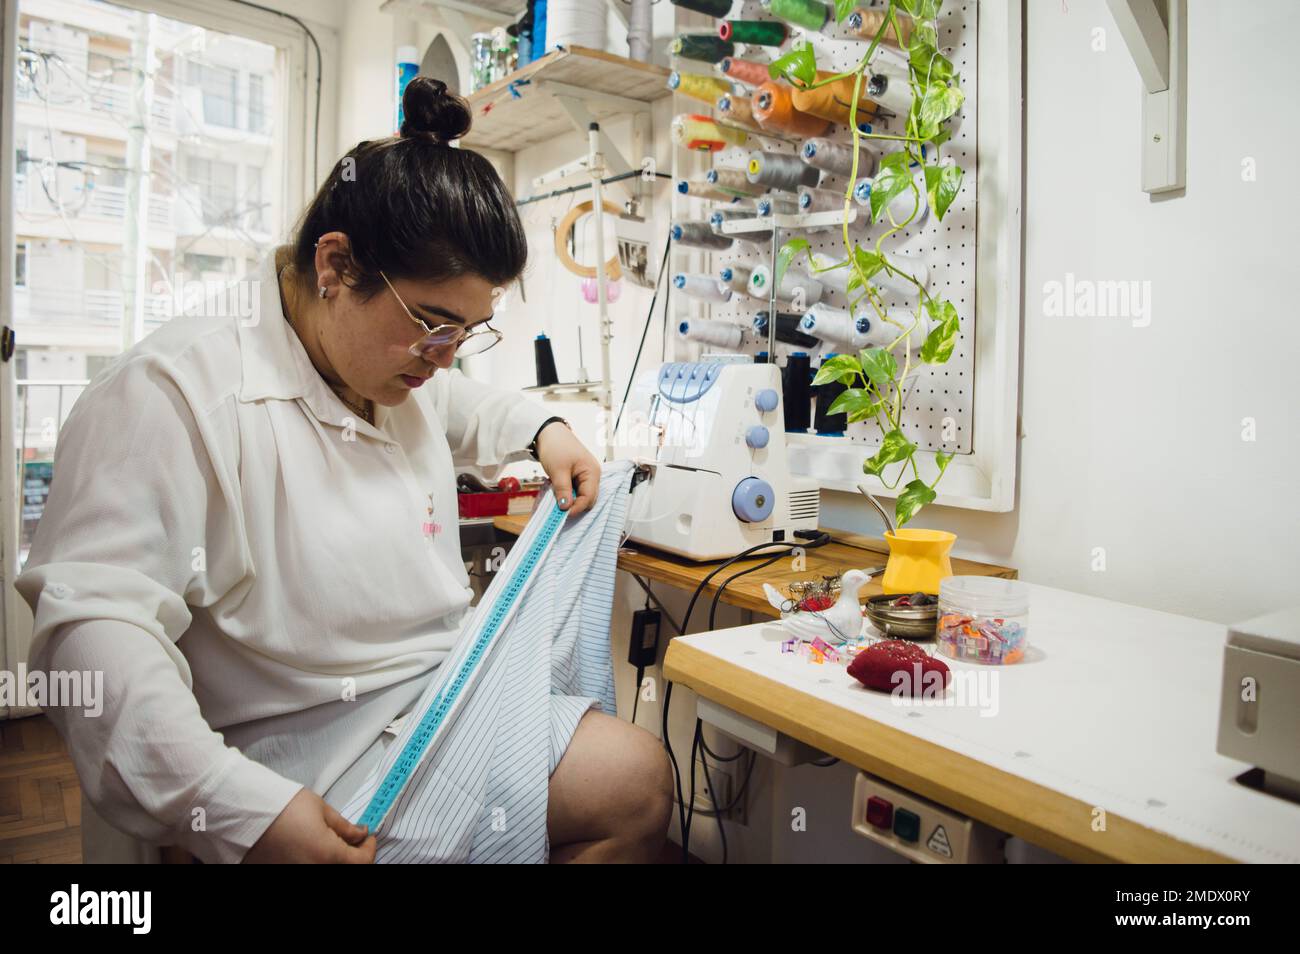 giovane donna di etnia argentina seamstress è seduta nel suo atelier da cucire, lavorando tessuto di misurazione con un metro a nastro, facendo un abito. Foto Stock